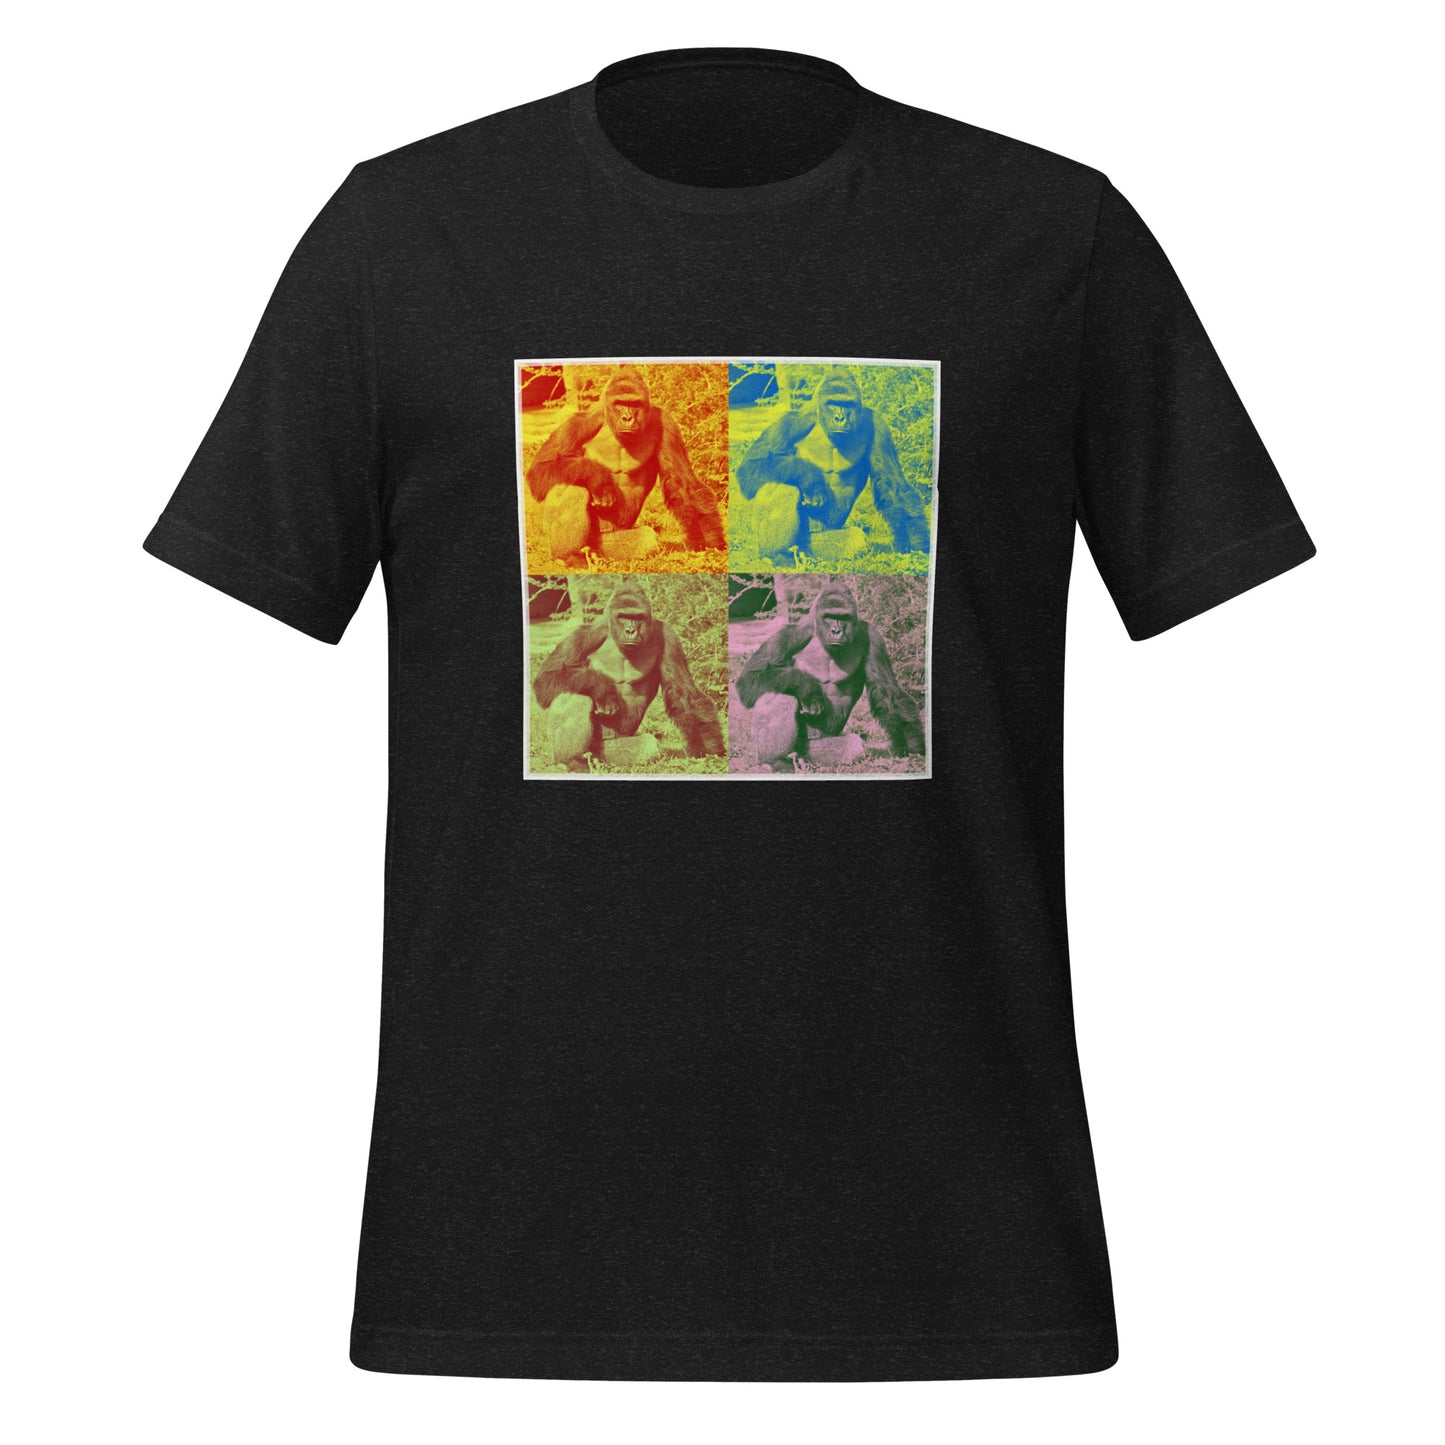 Unisex T-shirt Harambe Forever Pop Art